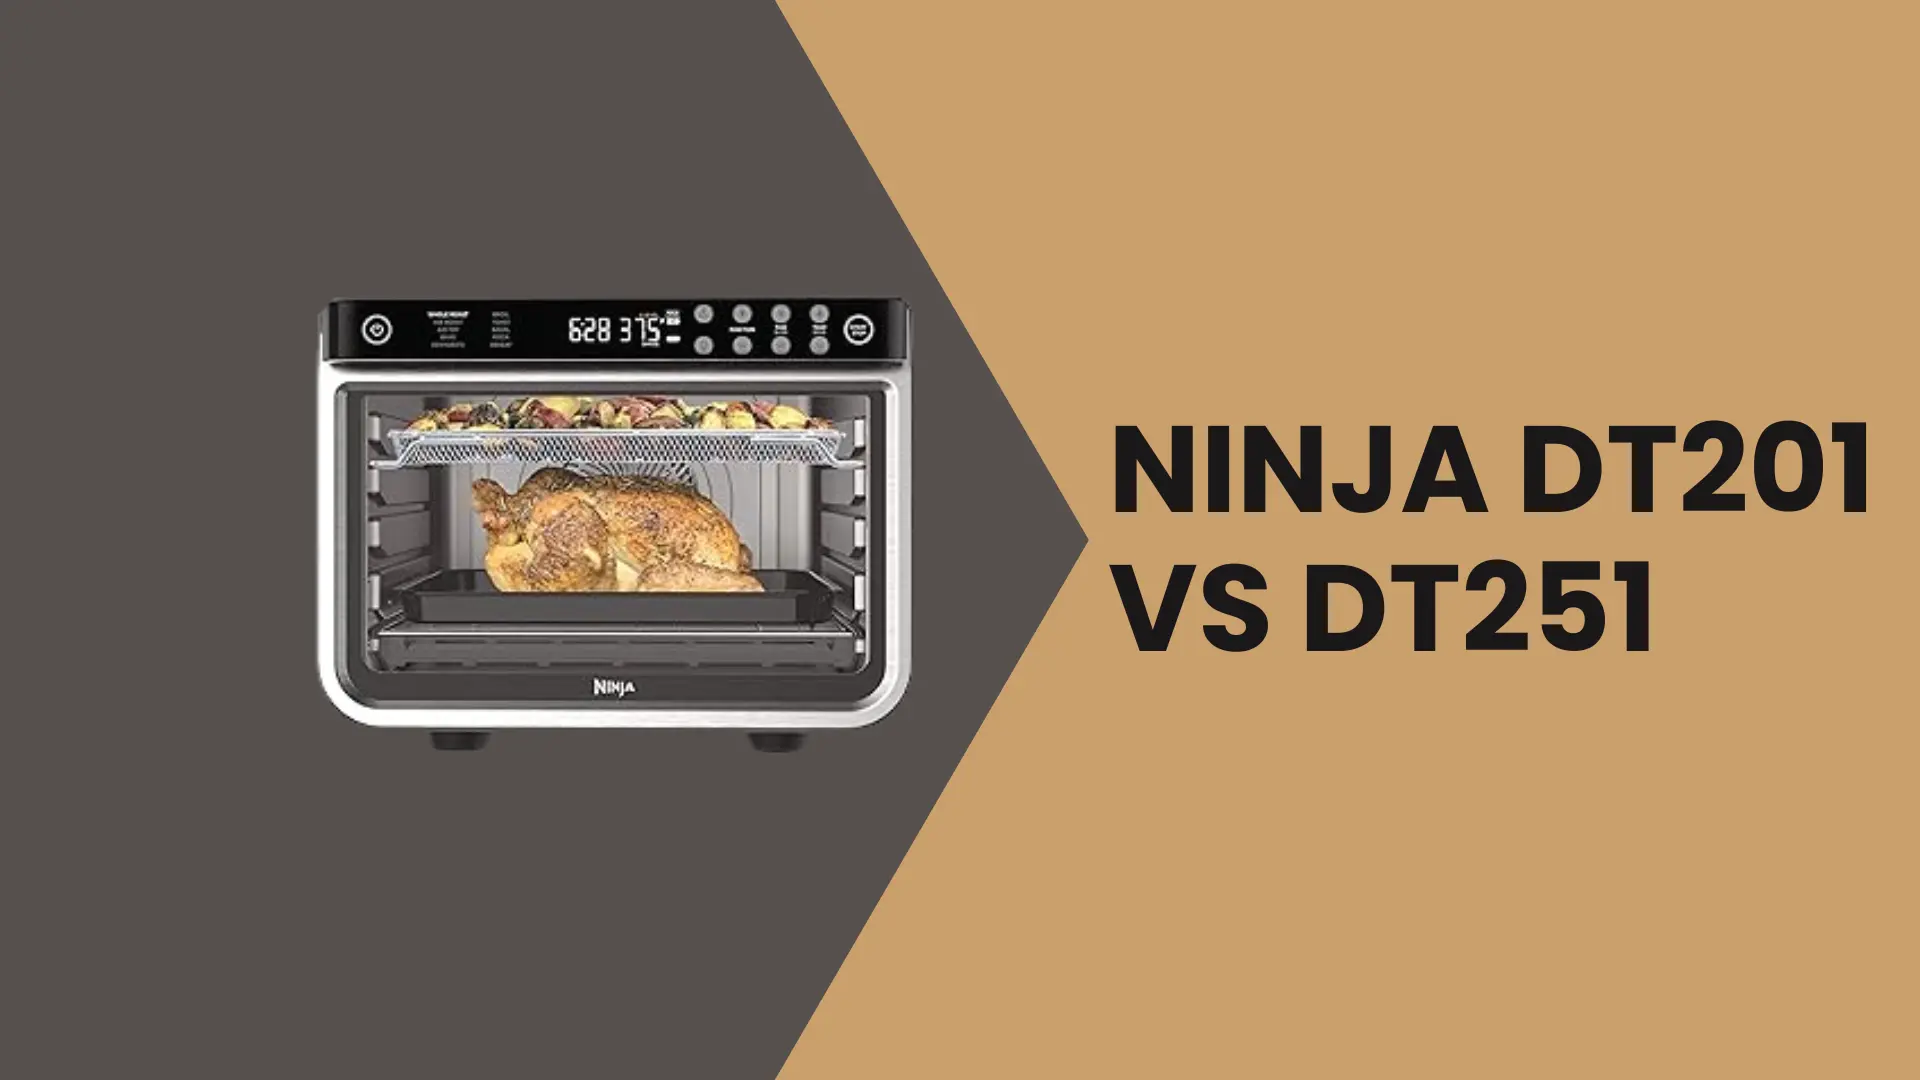 Ninja DT201 Vs DT251